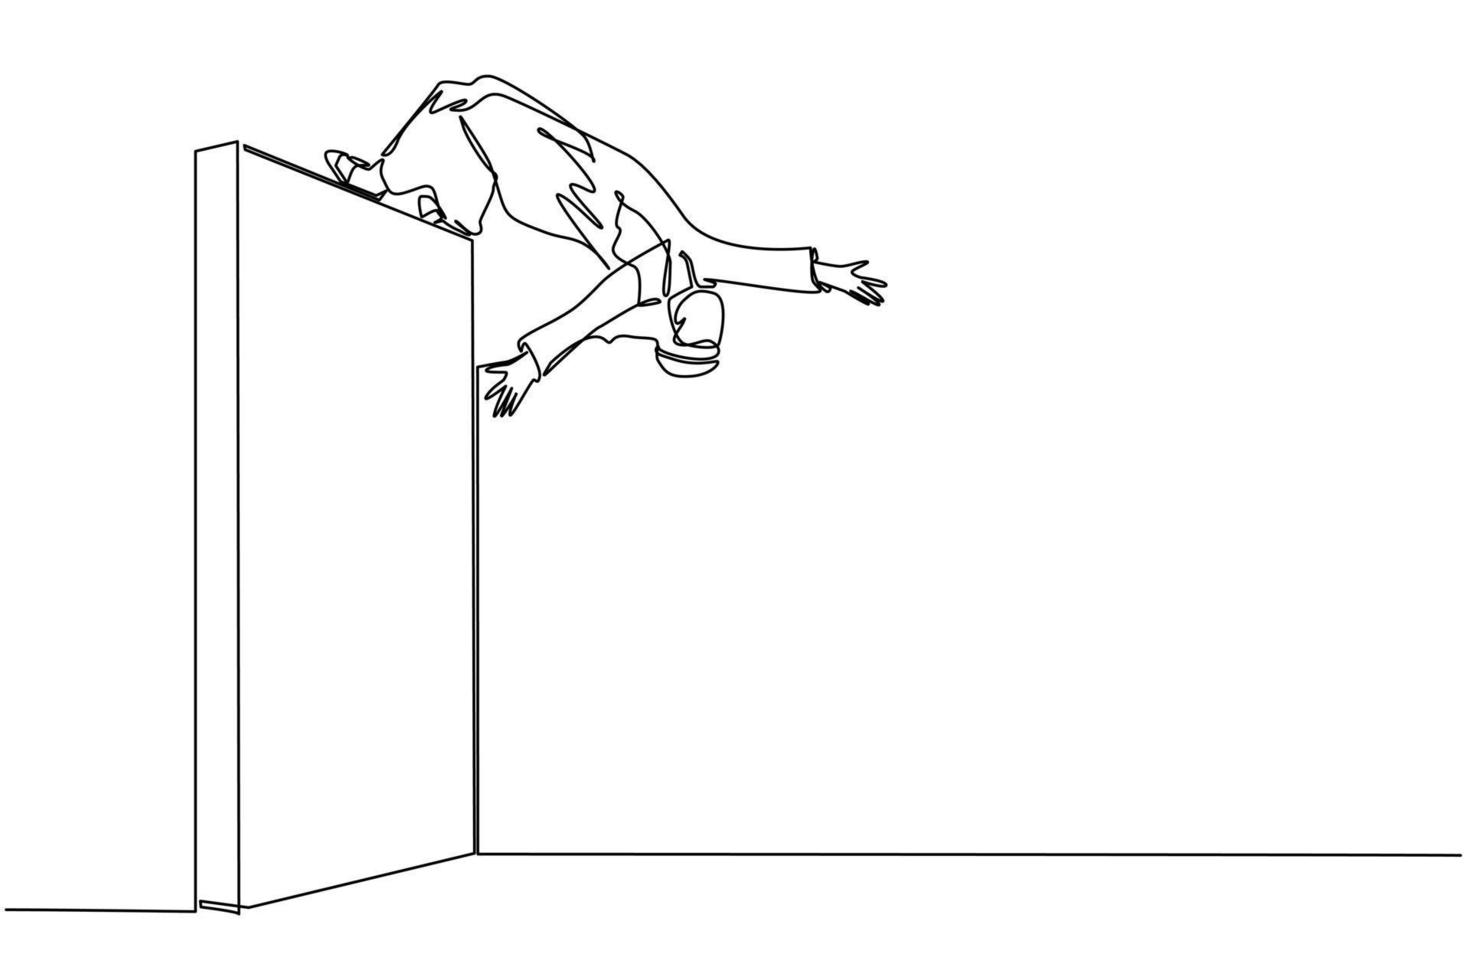 un hombre de negocios árabe de dibujo de una línea continua saltando sobre una pared de ladrillo con estilo acrobático sobre la cabeza para lograr su objetivo. empresario saltando sobre el muro de barreras. vector de diseño de dibujo de una sola línea